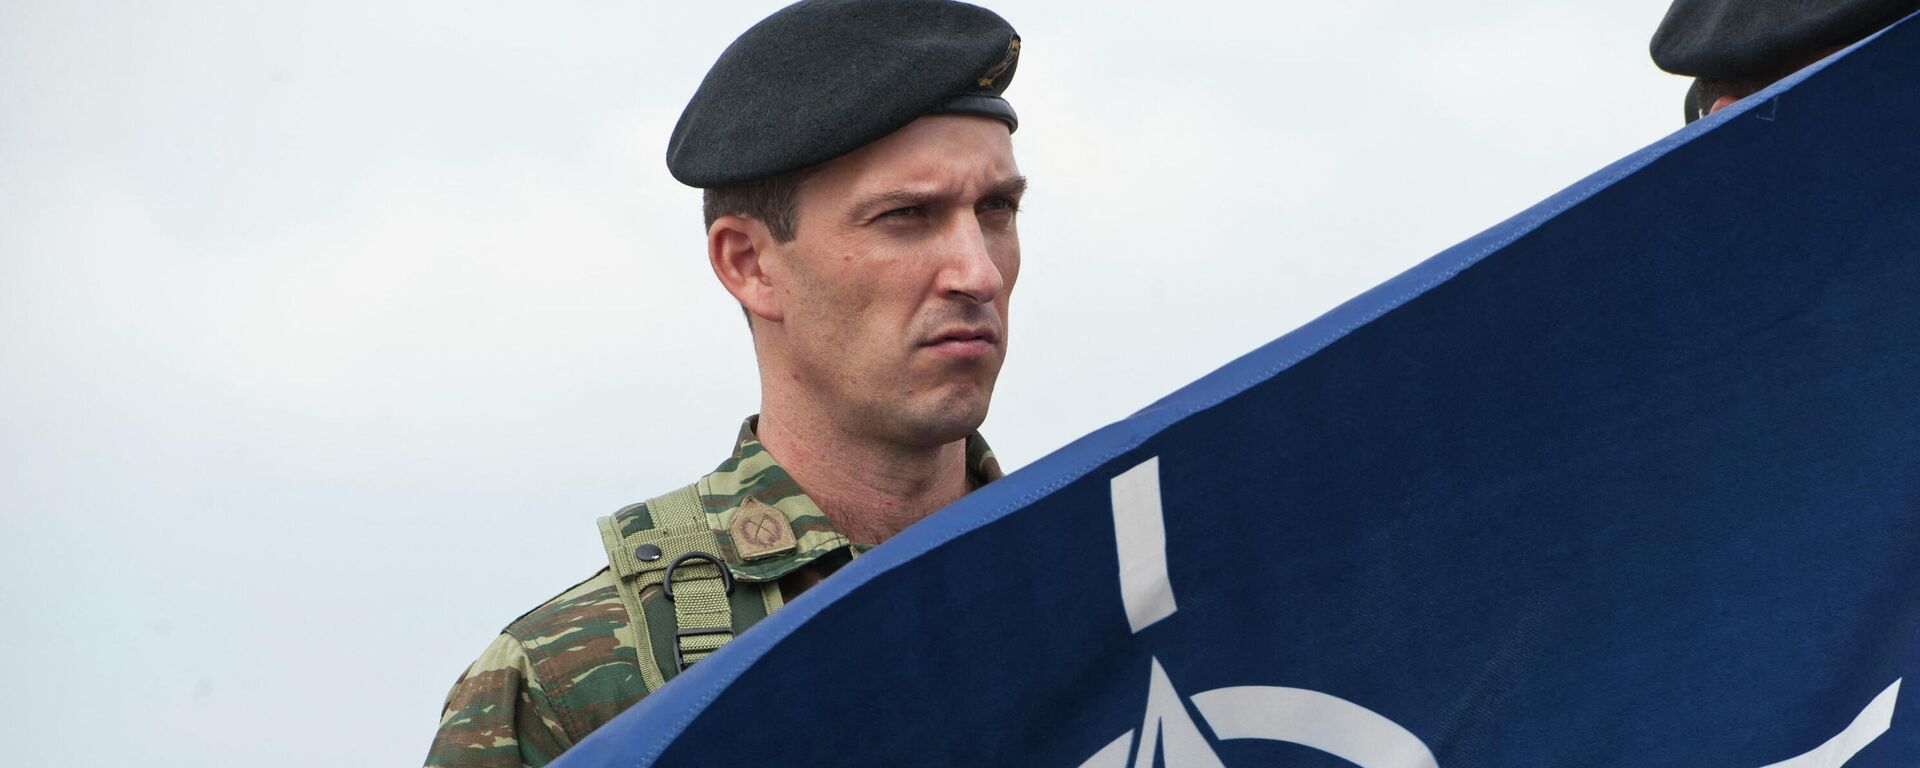 Члены миротворческих сил под руководством НАТО в Косово (KFOR) держат флаг НАТО - Sputnik Абхазия, 1920, 12.12.2022